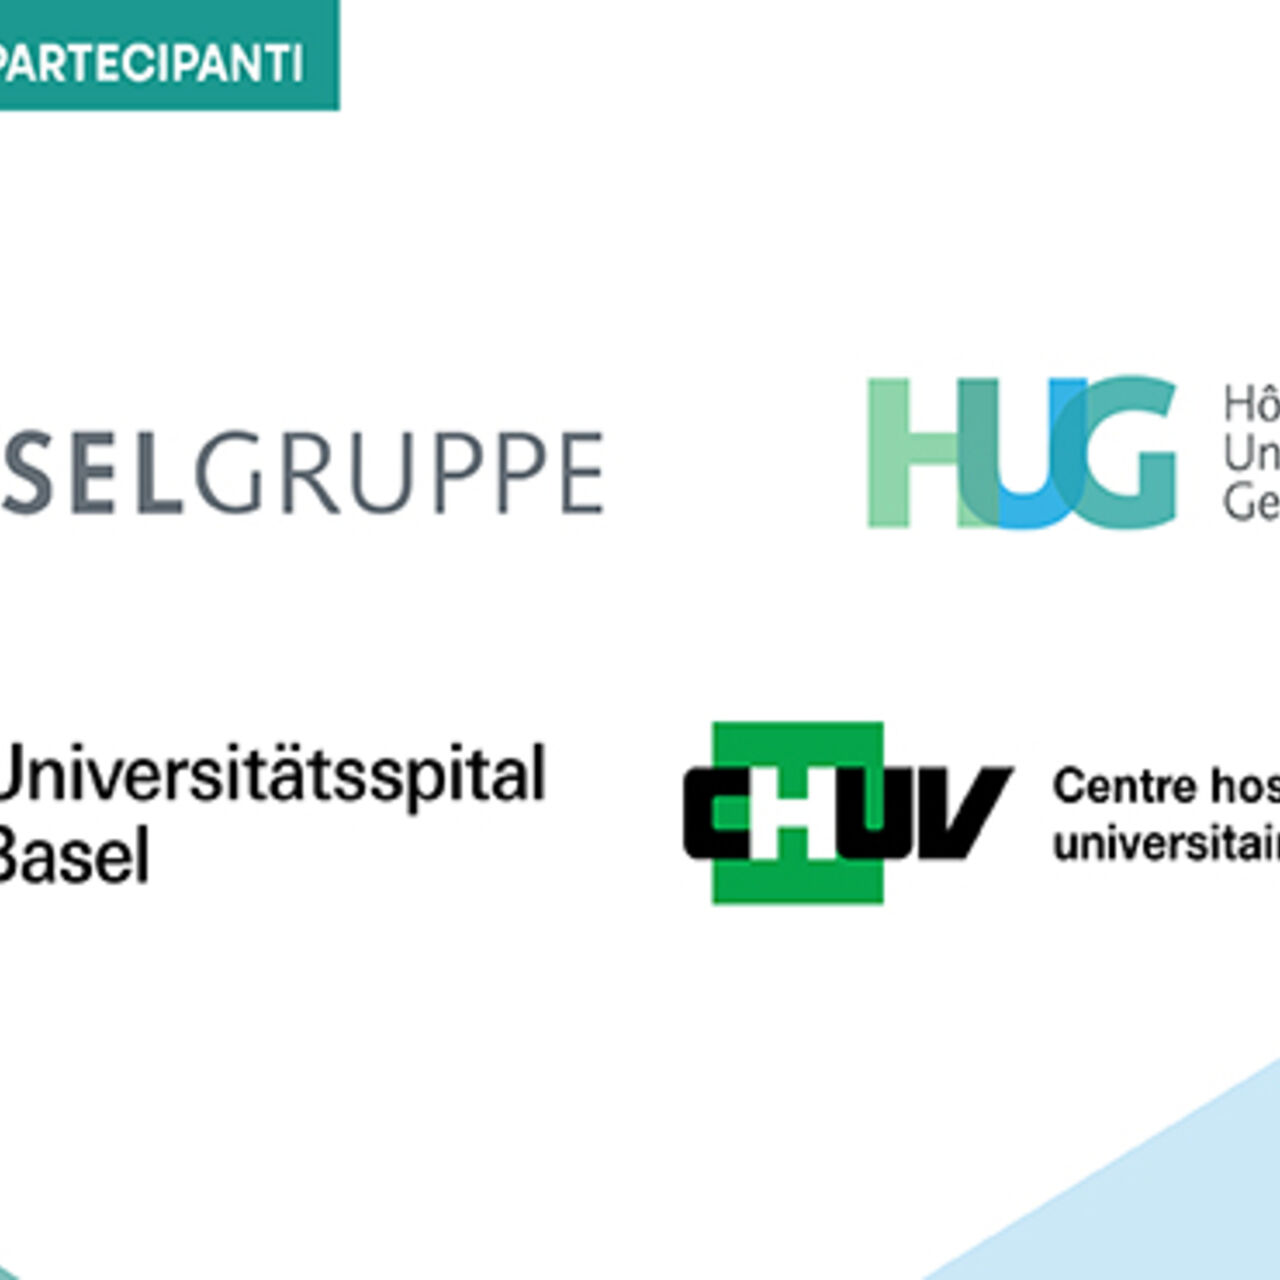 Ospedali universitari: i logotipi dei quattro ospedali universitari delle città di Basilea, Berna, Losanna e Ginevra che hanno aderito all'iniziativa della Confederazione Svizzera 